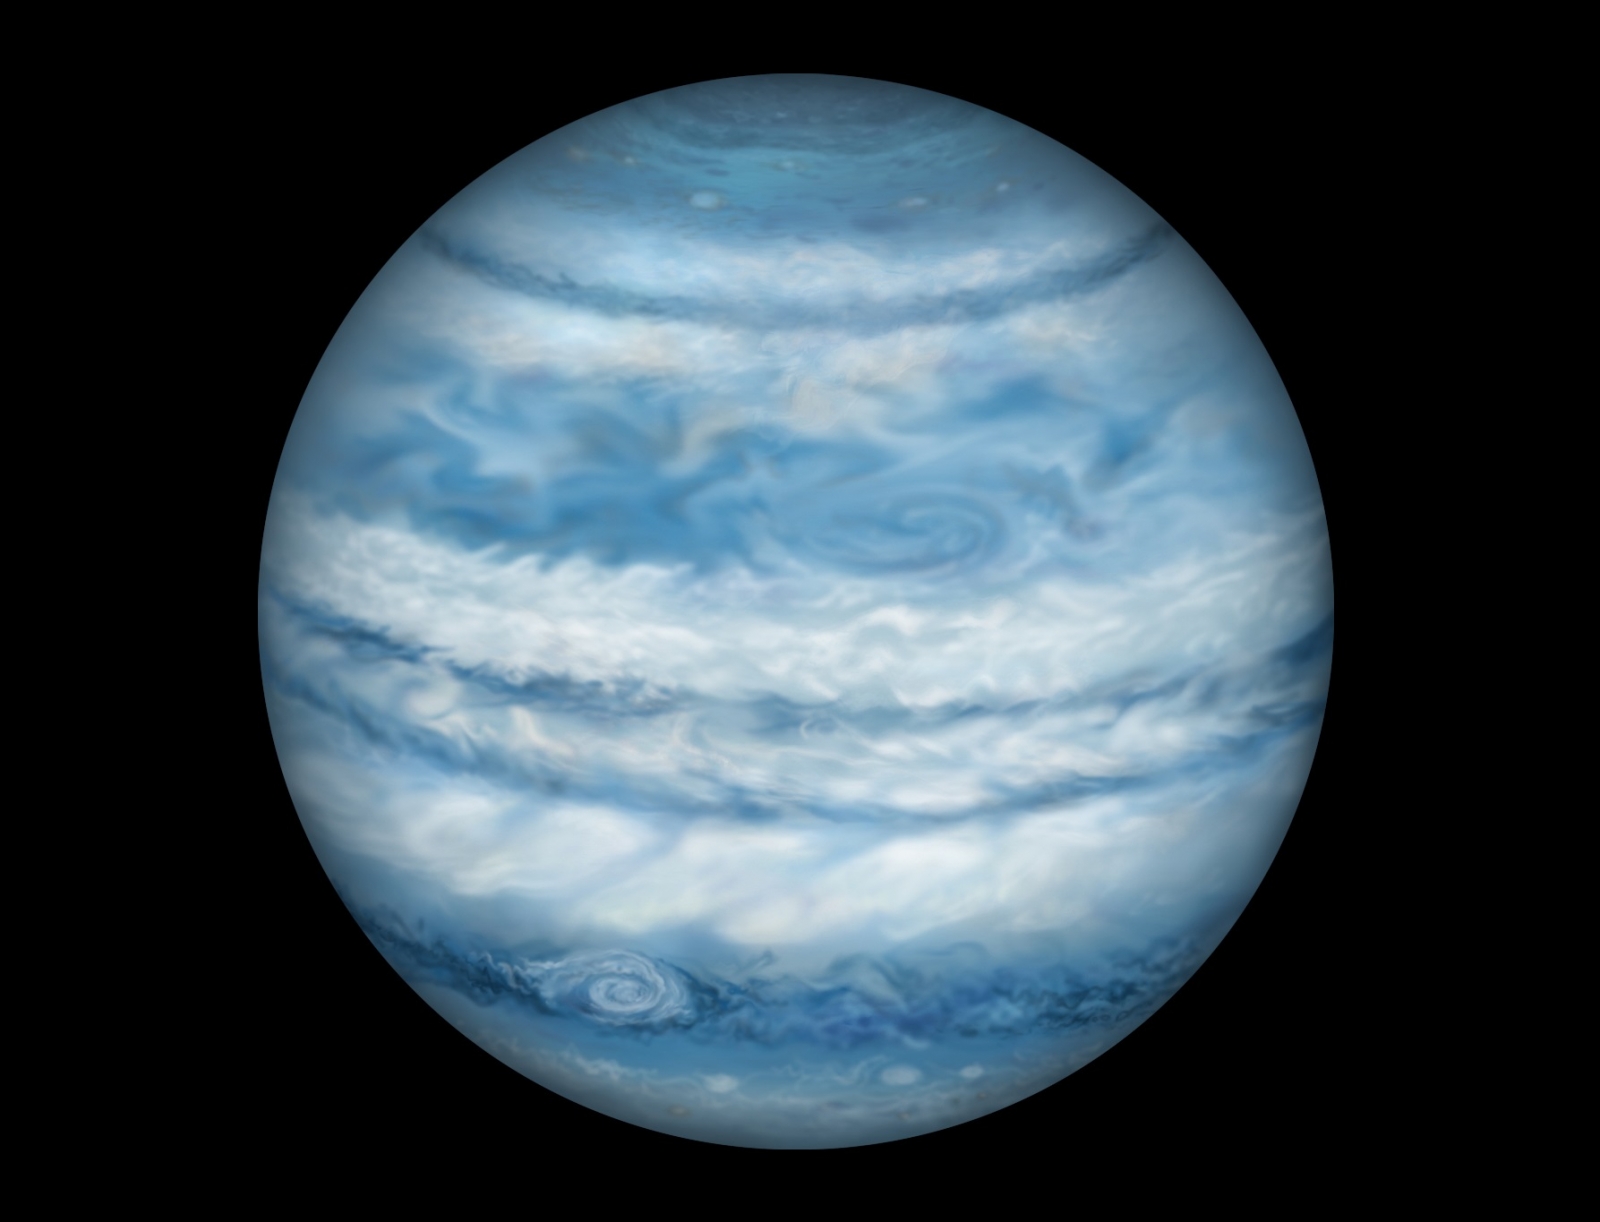 Kepler-1647 b